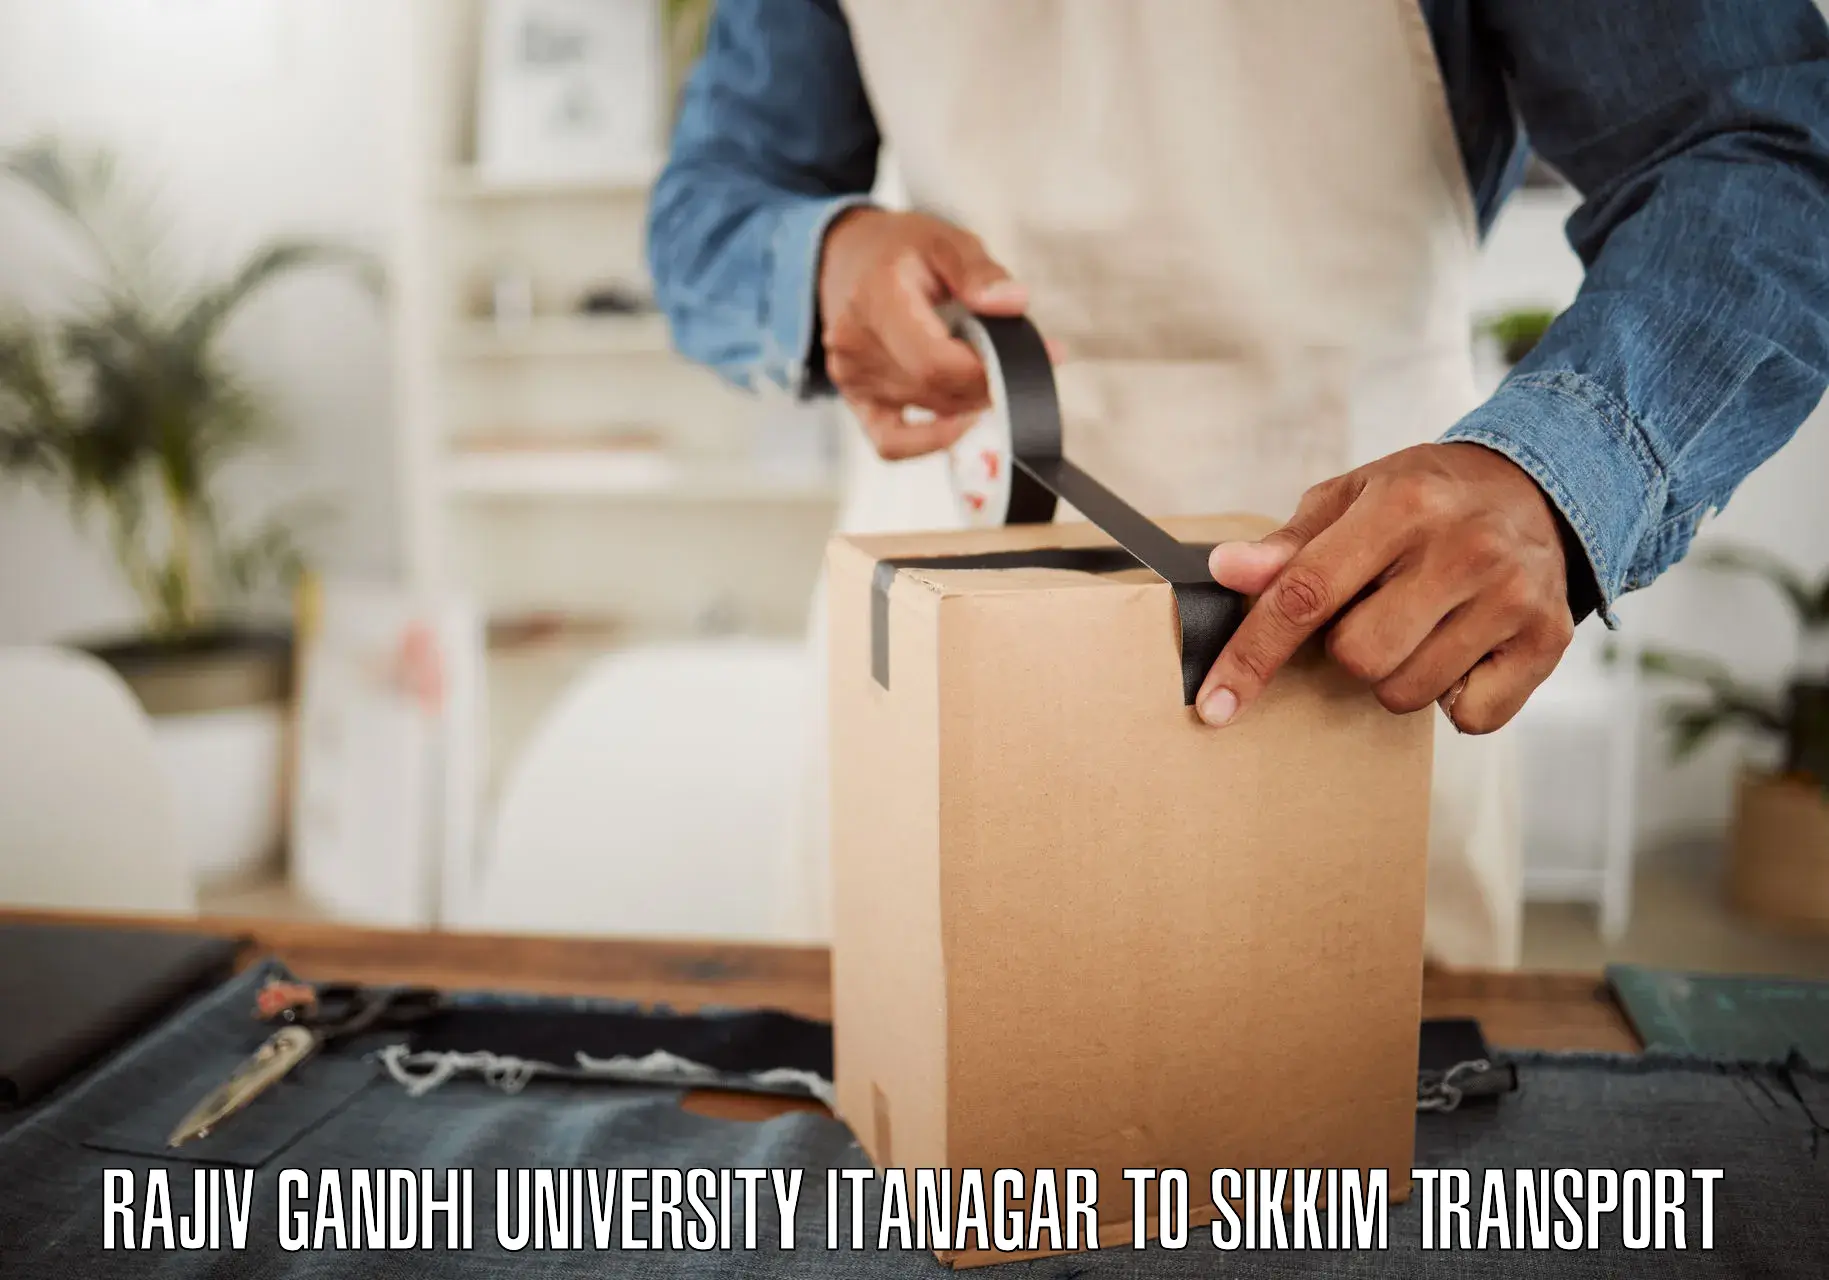 Furniture transport service Rajiv Gandhi University Itanagar to Sikkim